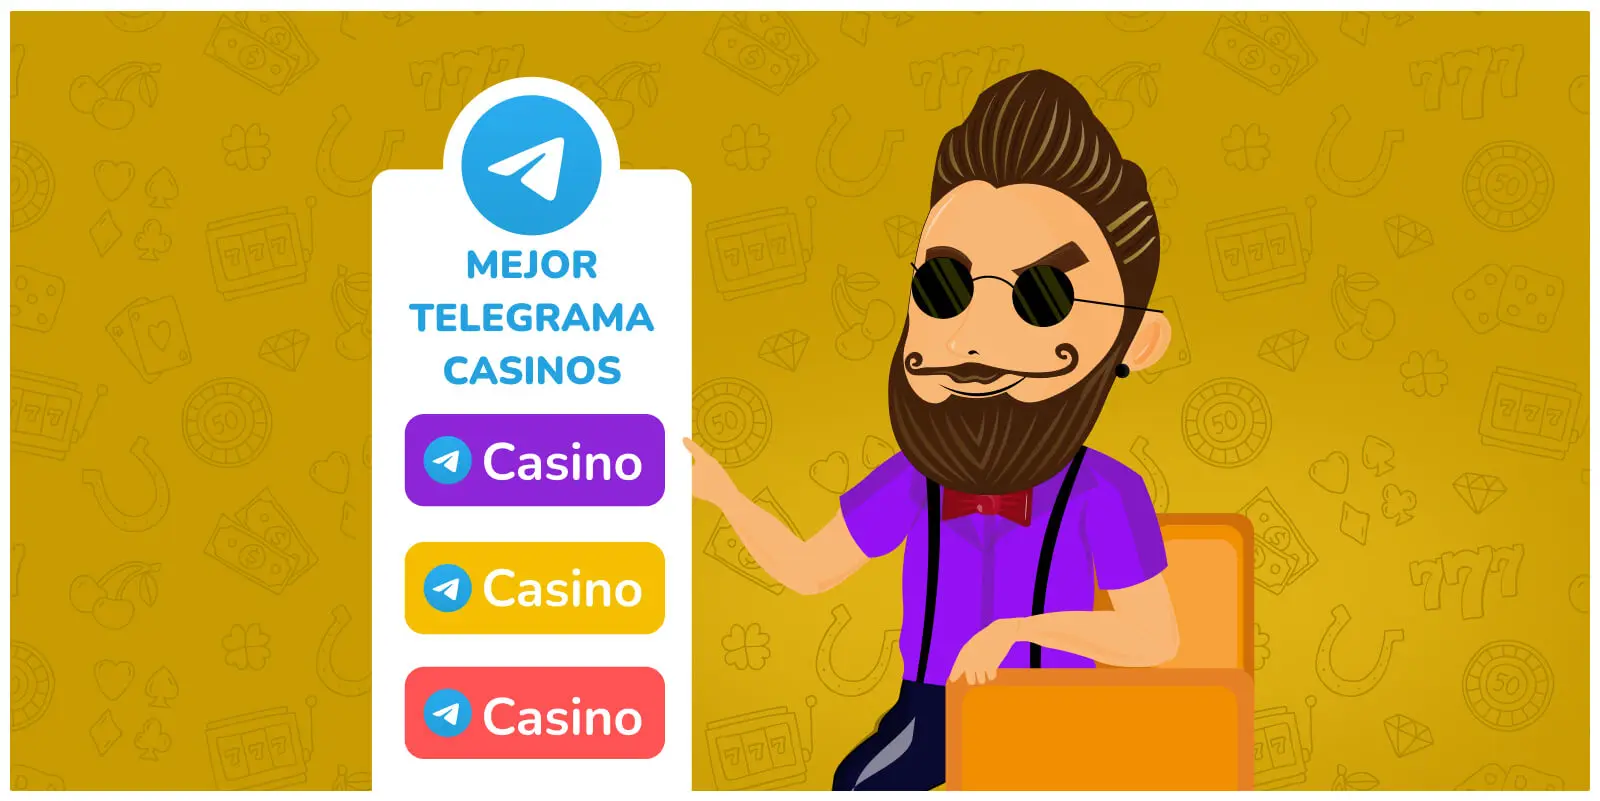 Los mejores casinos de Telegram